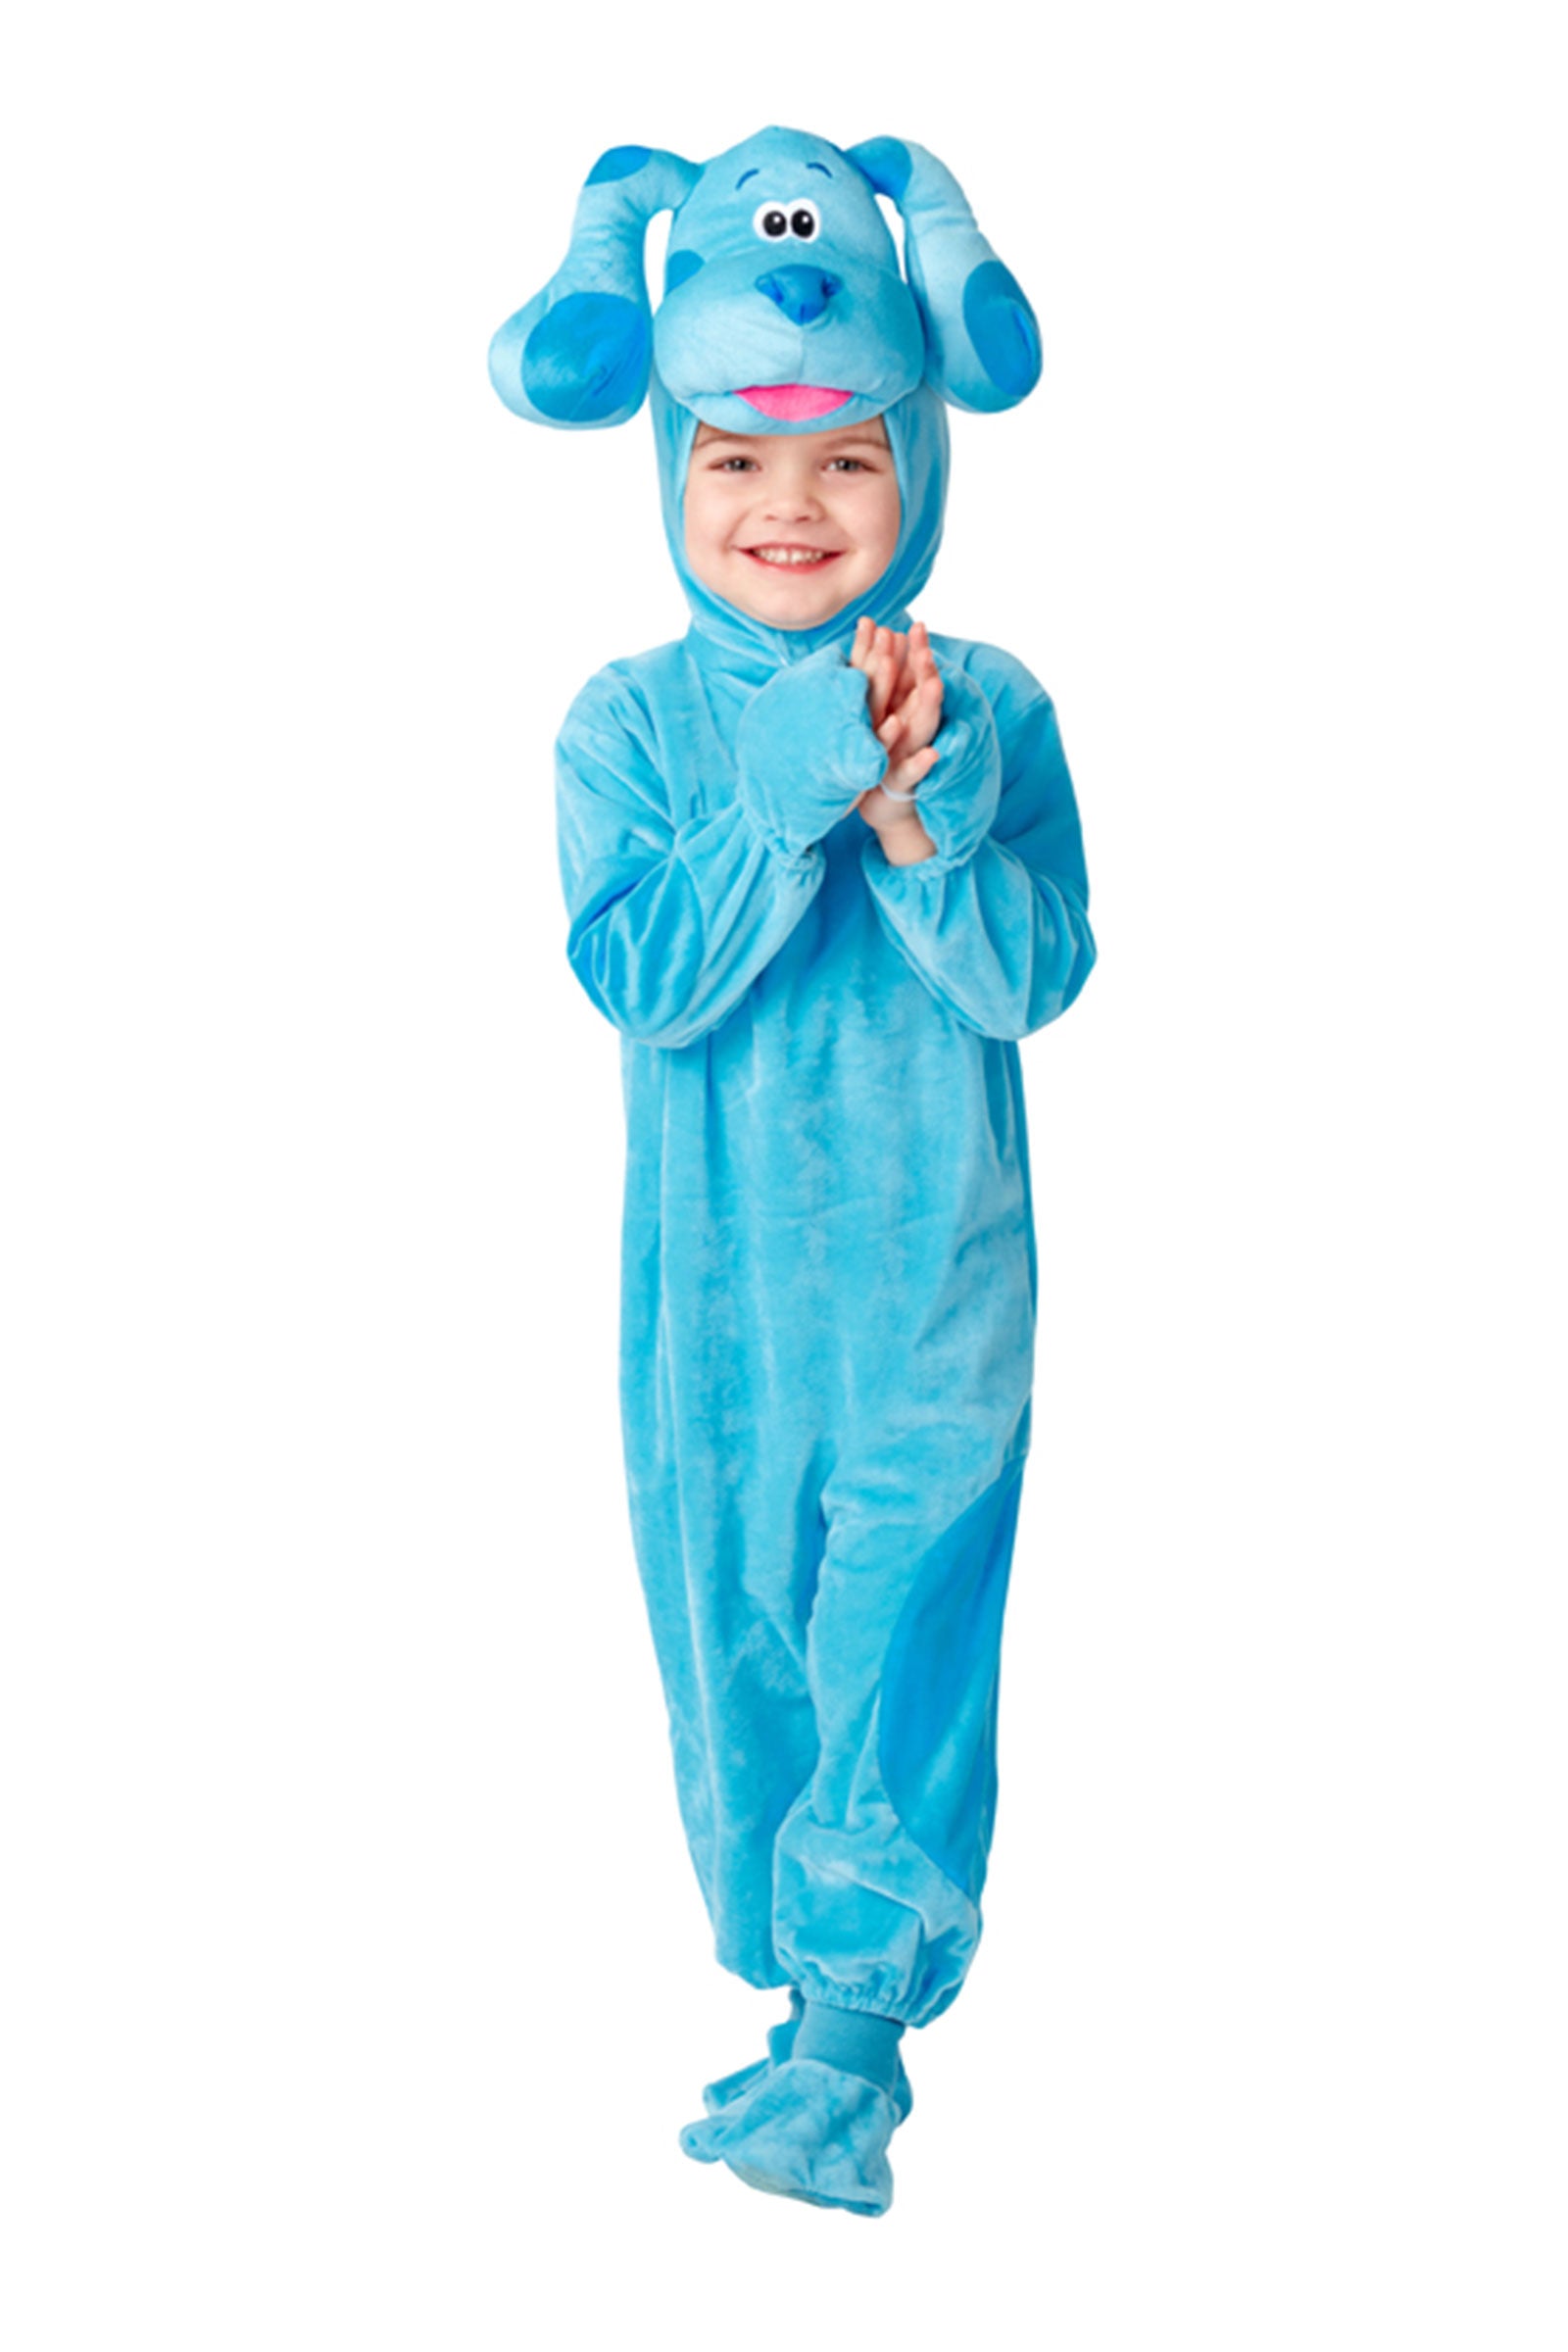 Blue Infant/Toddler Costume